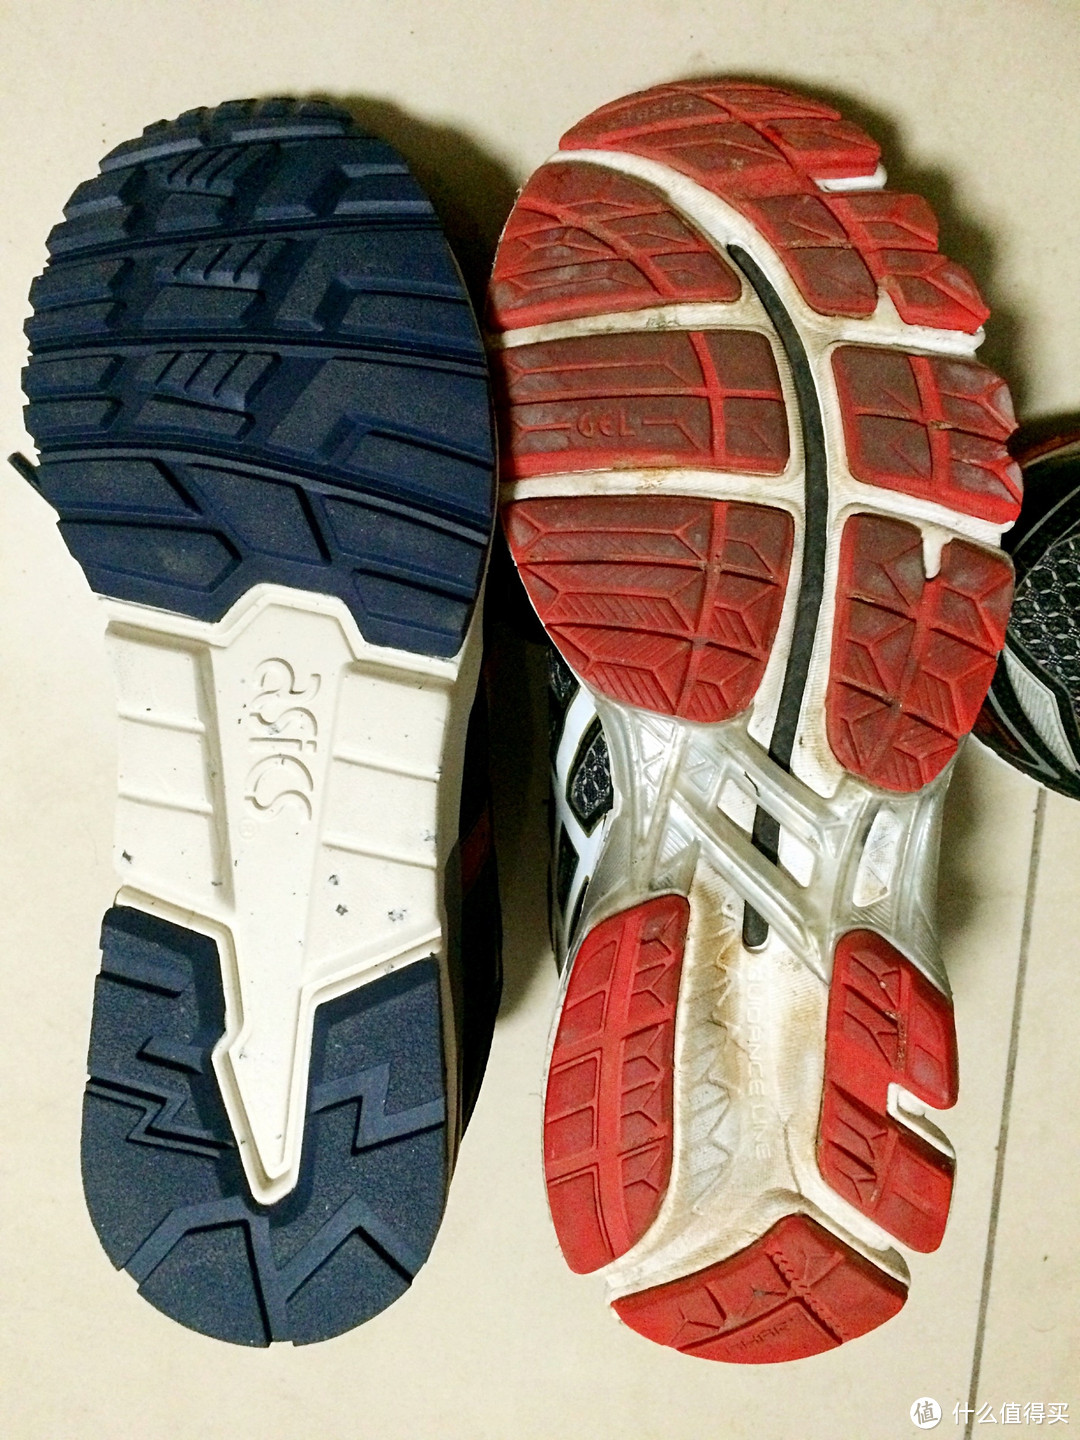 Asics 亚瑟士 Gel-Lyte V 跑鞋尺码选择心得（与K20对比）